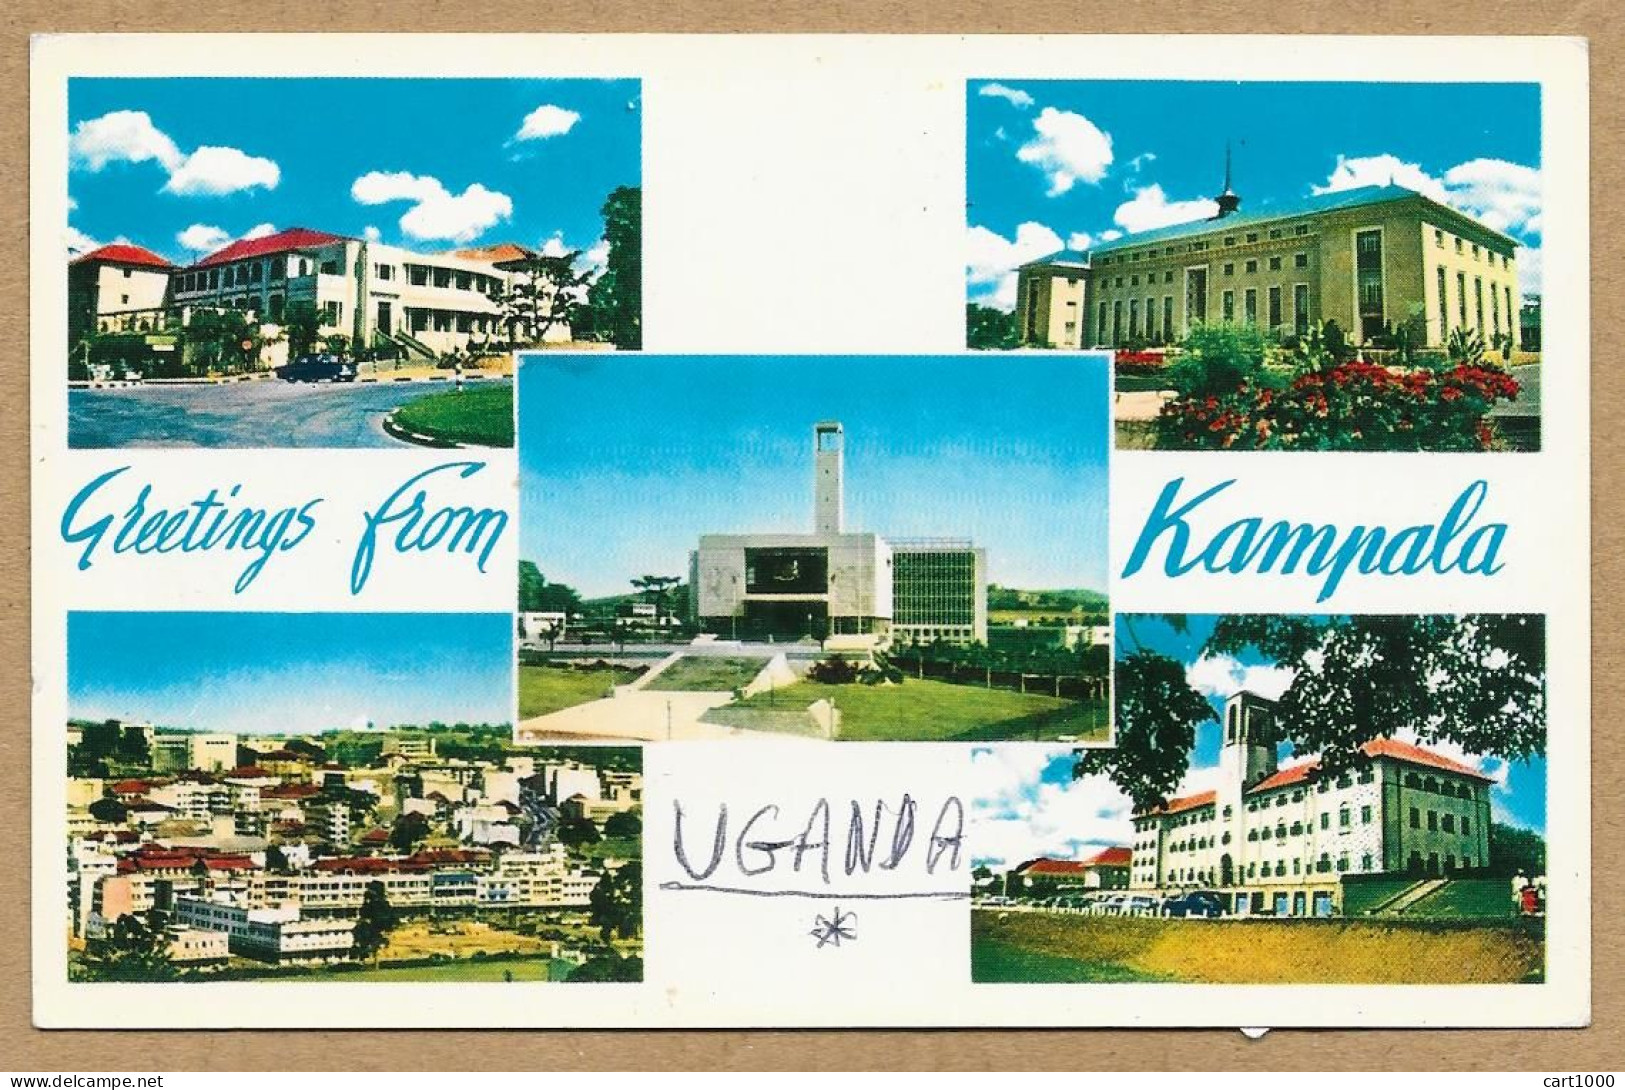 UGANDA KAMPALA 1984 N°H034 - Uganda